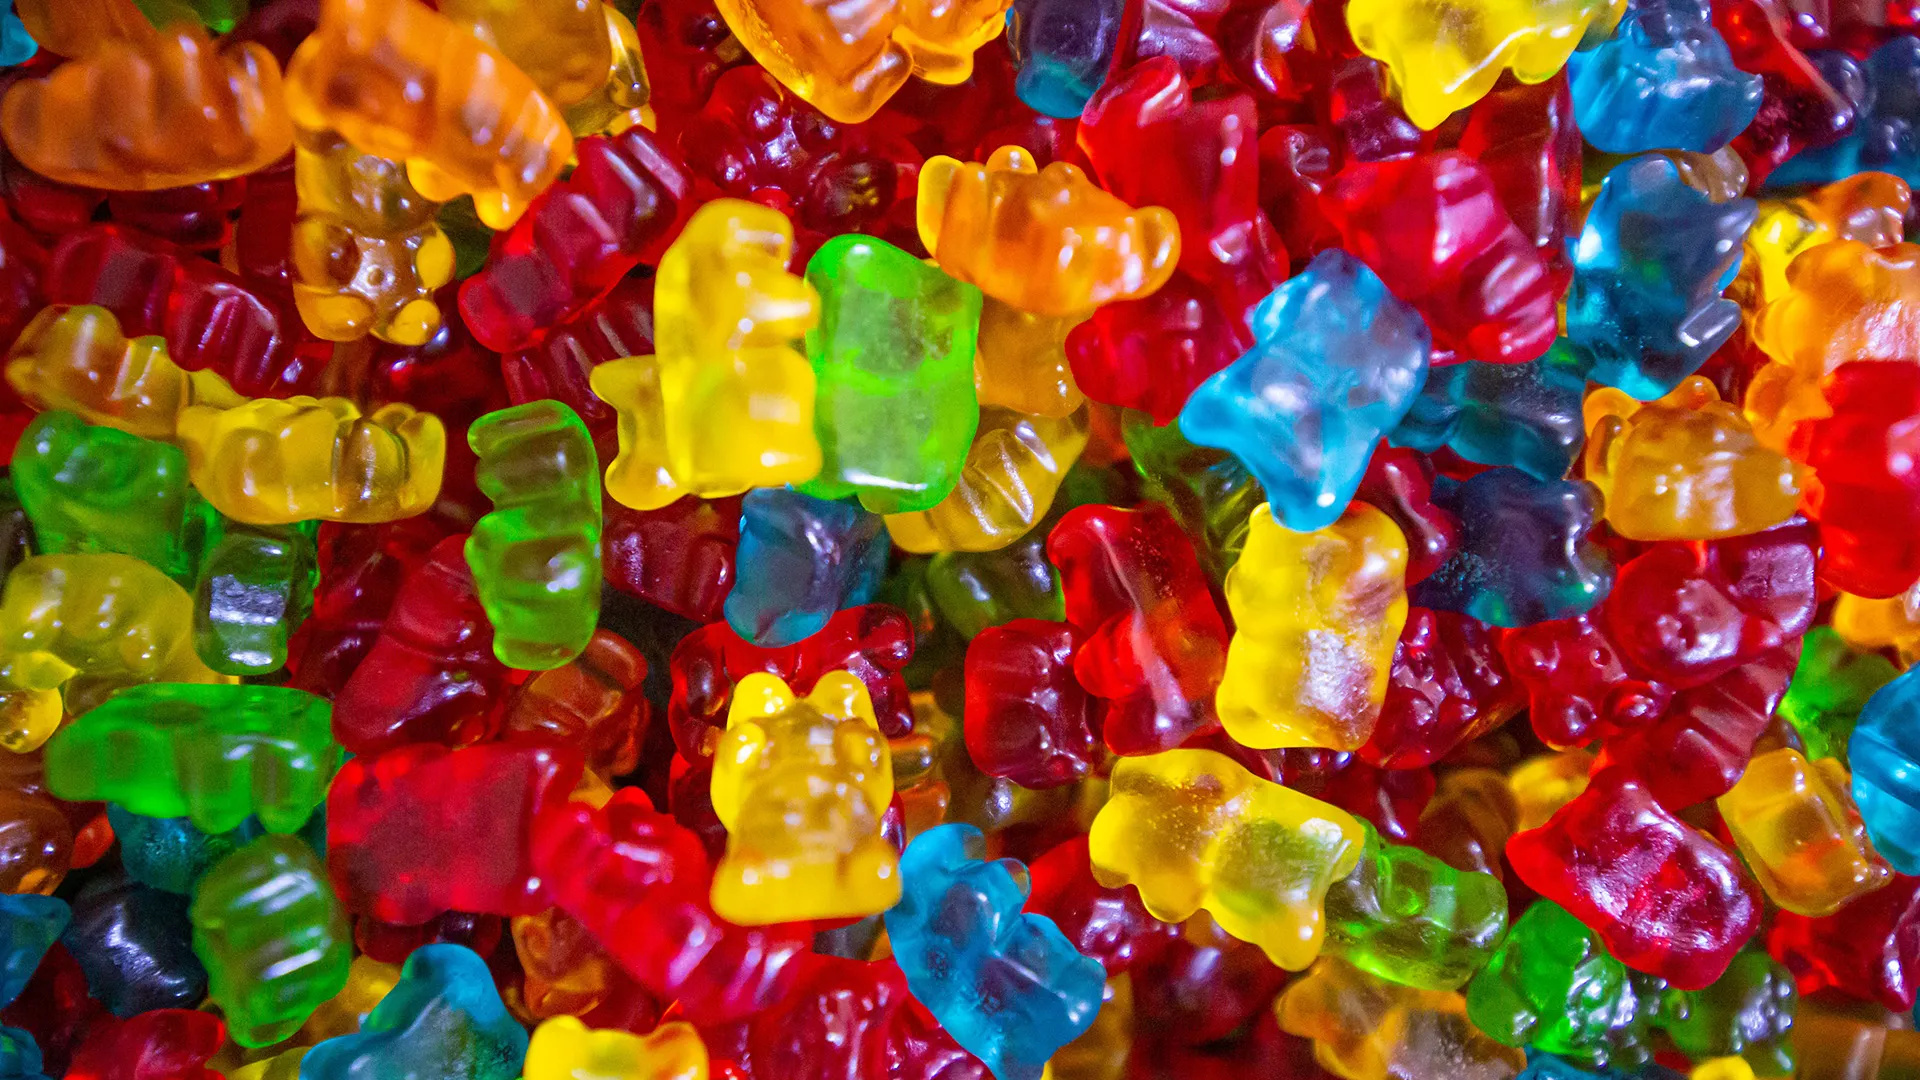 Gummy Bears, Swaren Neupert GmbH, Gummy candy manufacturer, Quality sweets, 1920x1080 Full HD Desktop